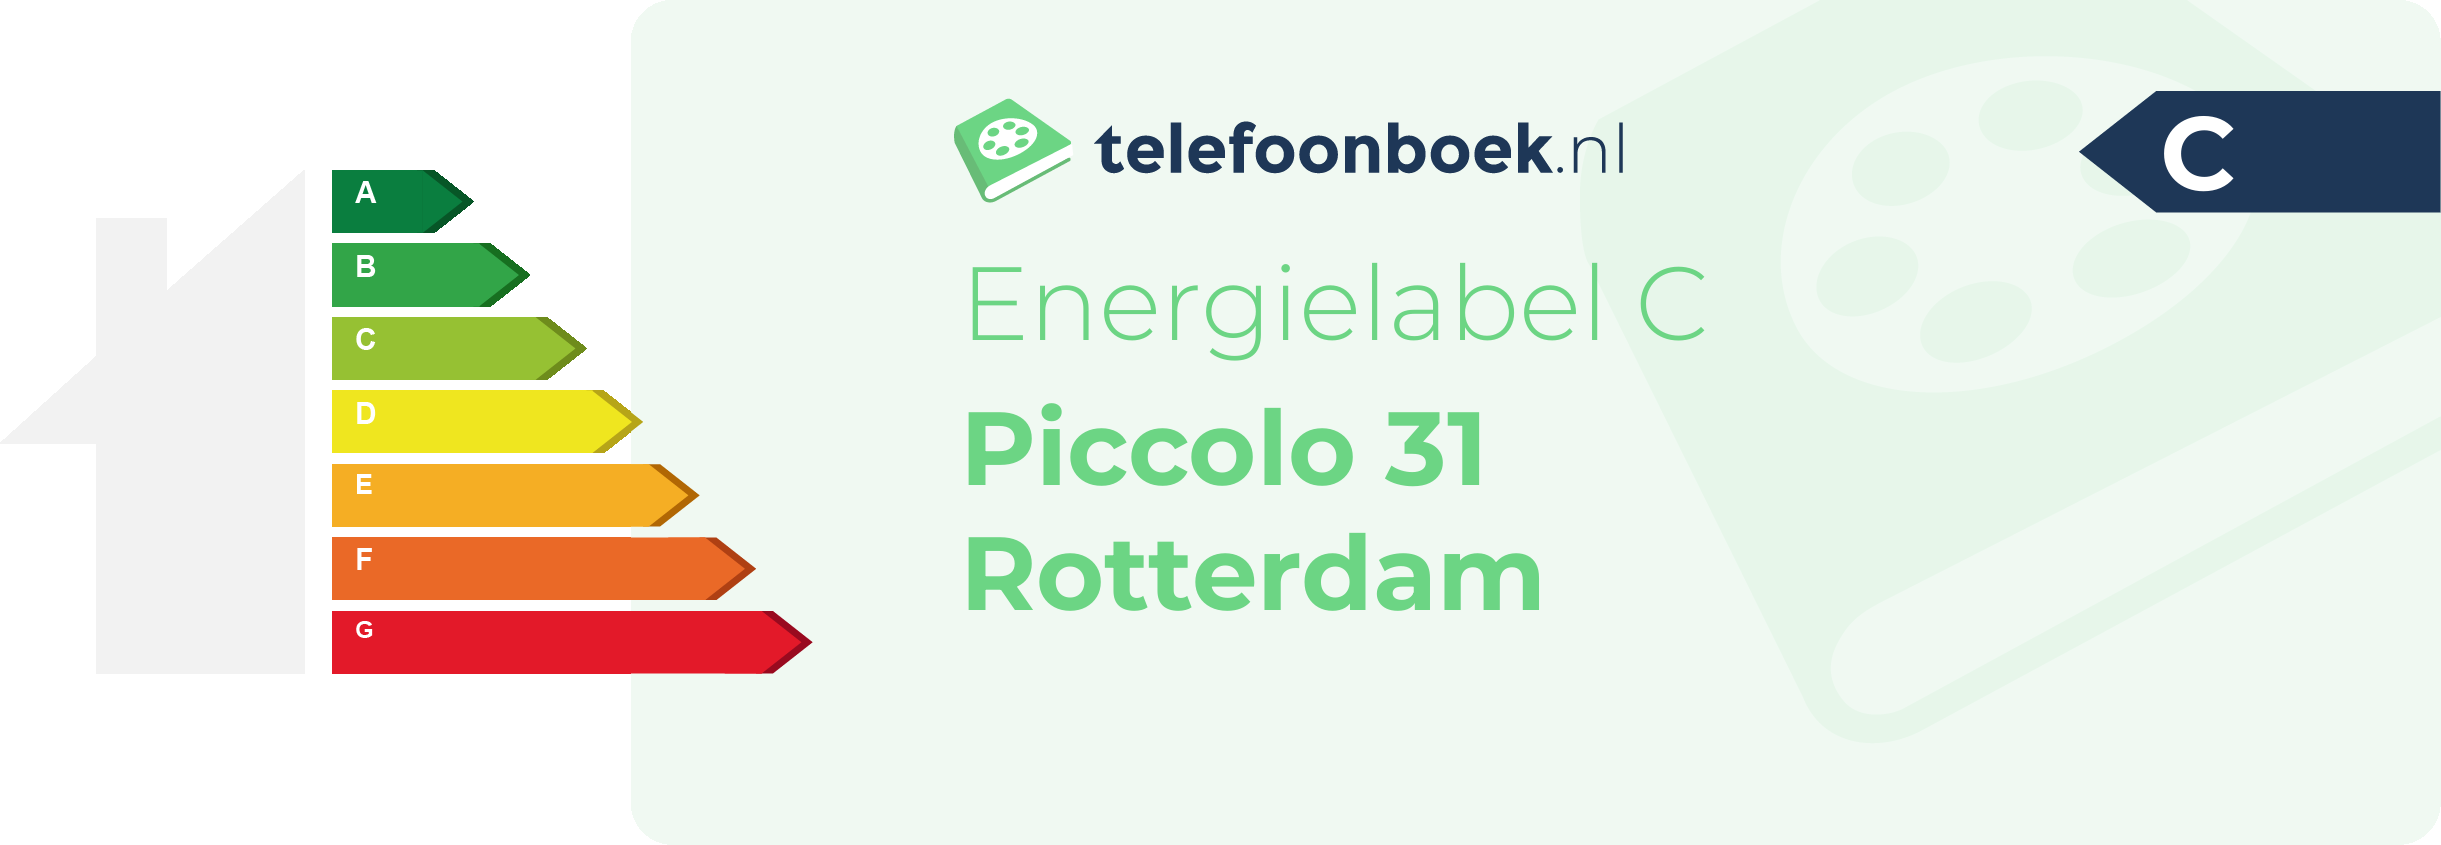 Energielabel Piccolo 31 Rotterdam